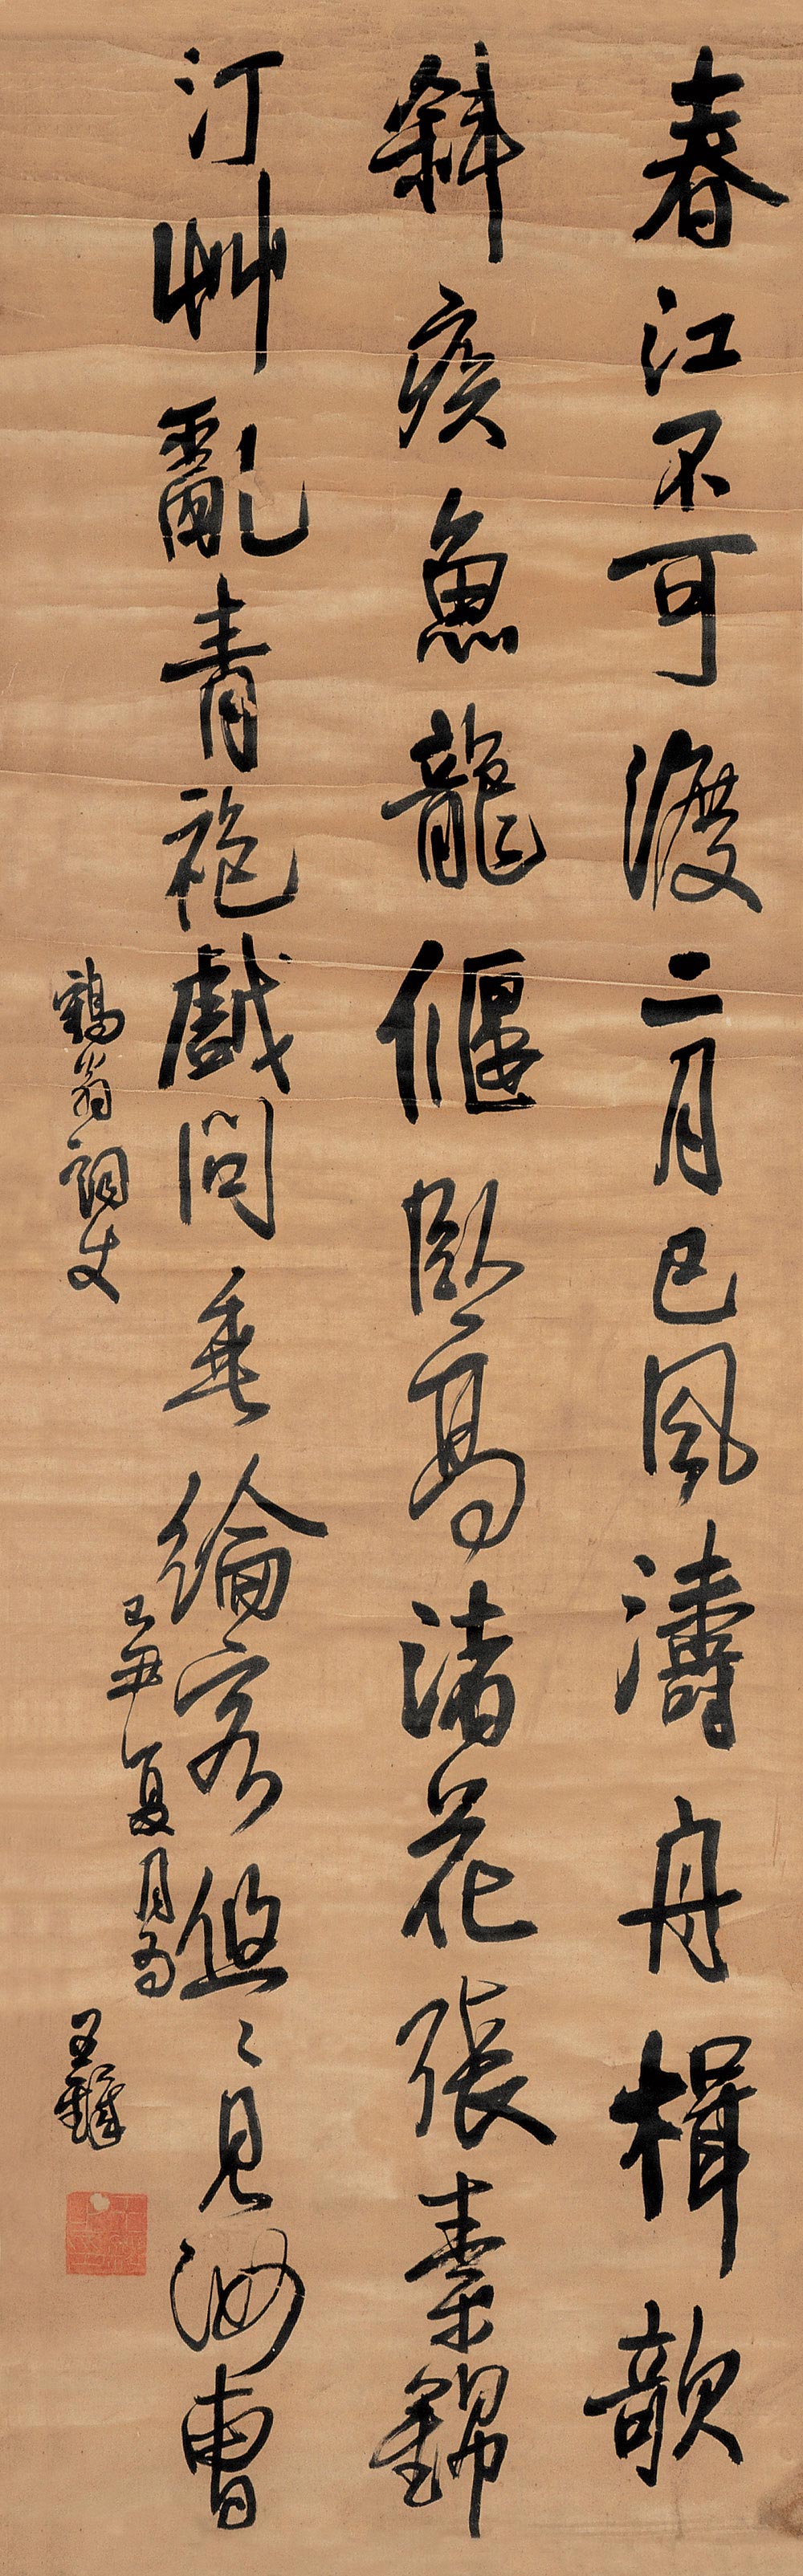 王铎《行书条幅》 立轴 水墨绫本 1639年作 173×53cm  释文: 春江不